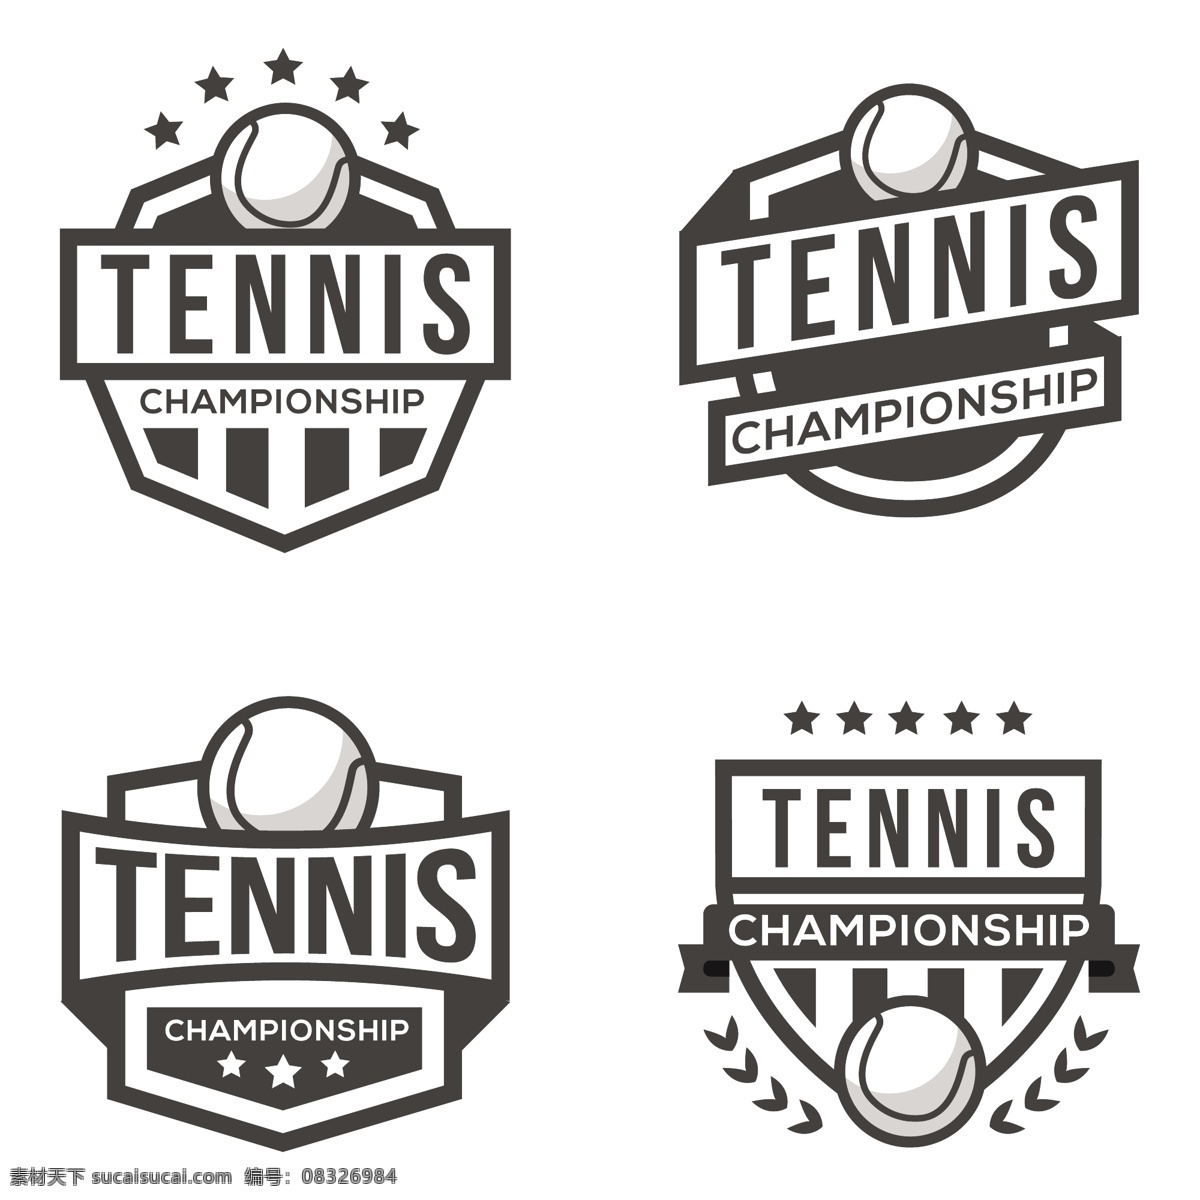 四体育标志 标志 商业 体育 健身 健康 营销 形状 企业 网球 公司 品牌 现代 运动 企业形象 培训 符号 身份